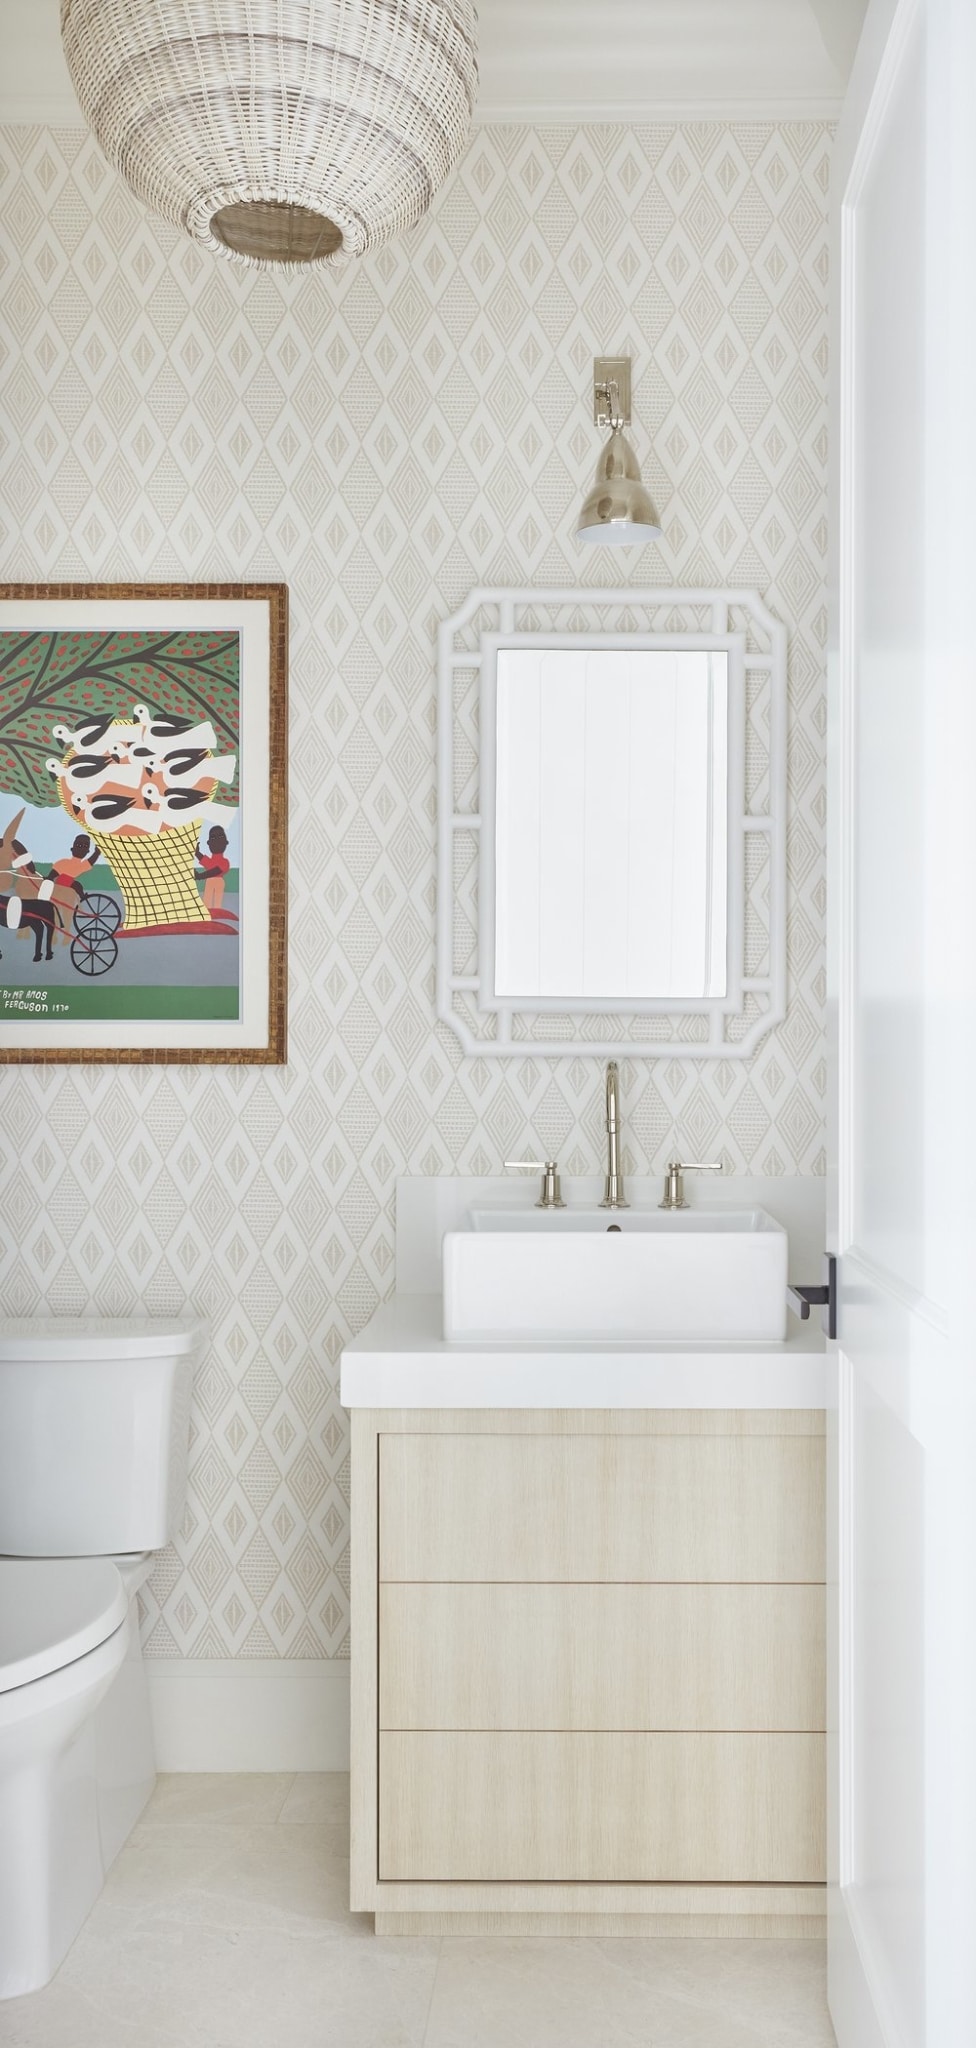  Florida house tour - Kara Miller Interior Design - Brantley Photography - bathroom - bathroom design = bathroom decor